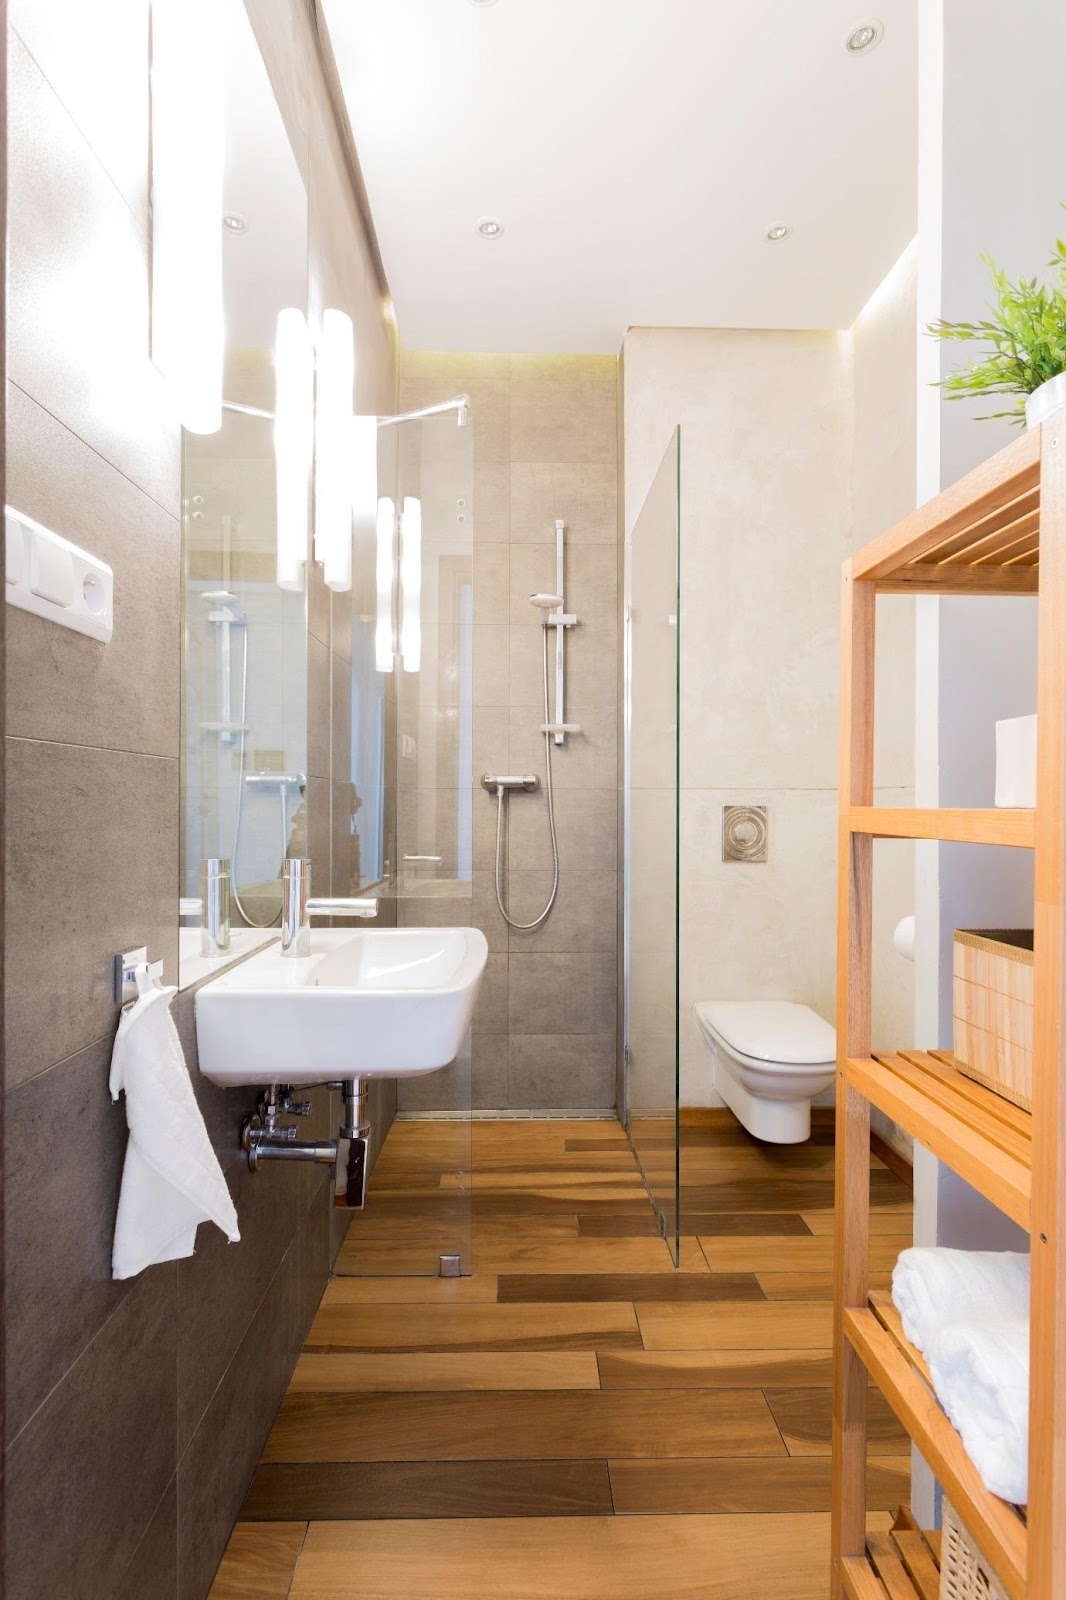 Uma imagem contendo chão, interior, parede, banheiro

Descrição gerada automaticamente